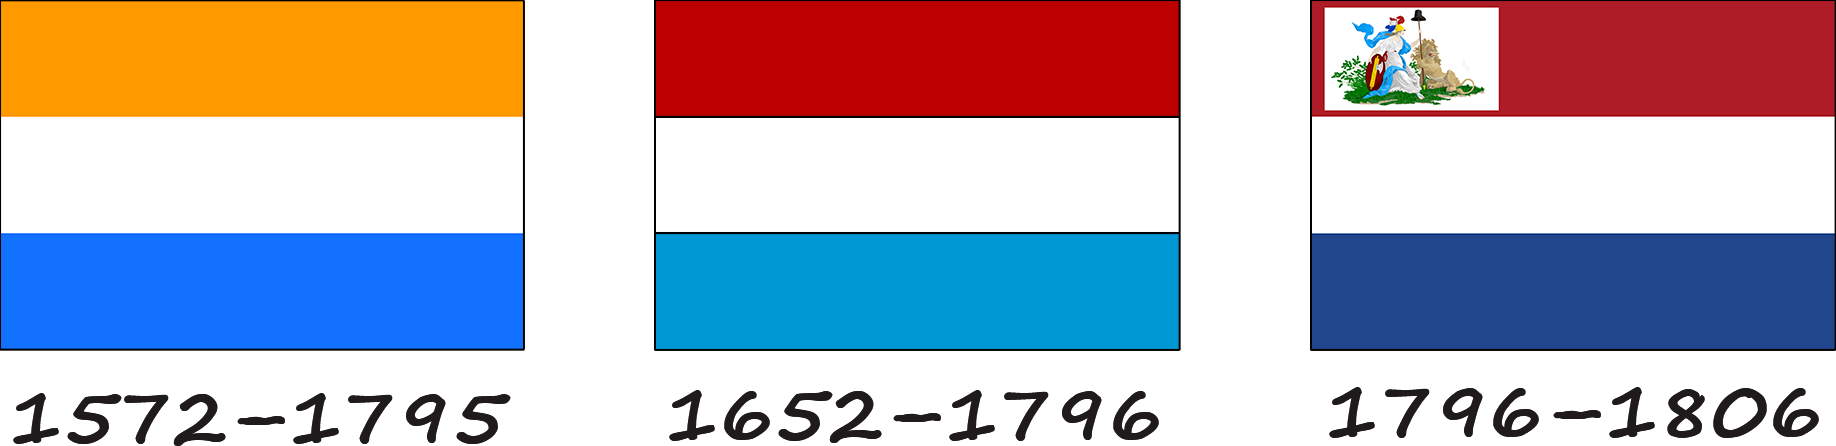 Histoire du drapeau néerlandais